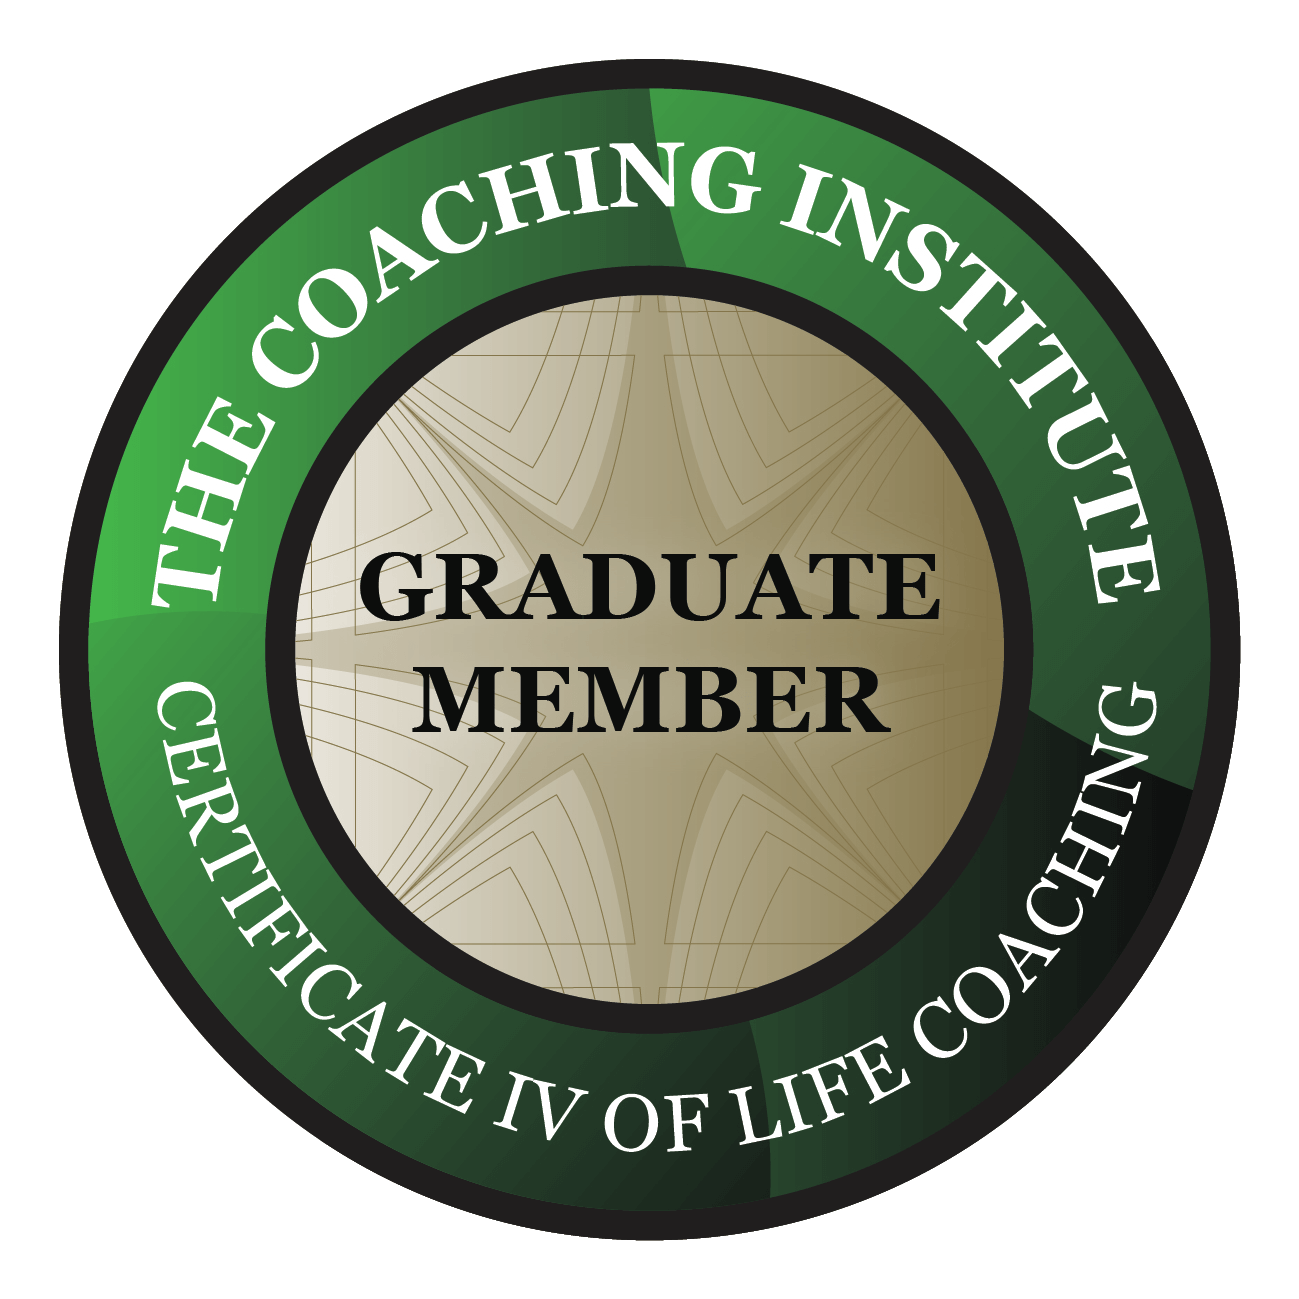 Certificate IV of Life Coaching  Graduate Member of The Coaching Institute’s Certificate IV of Life Coaching group